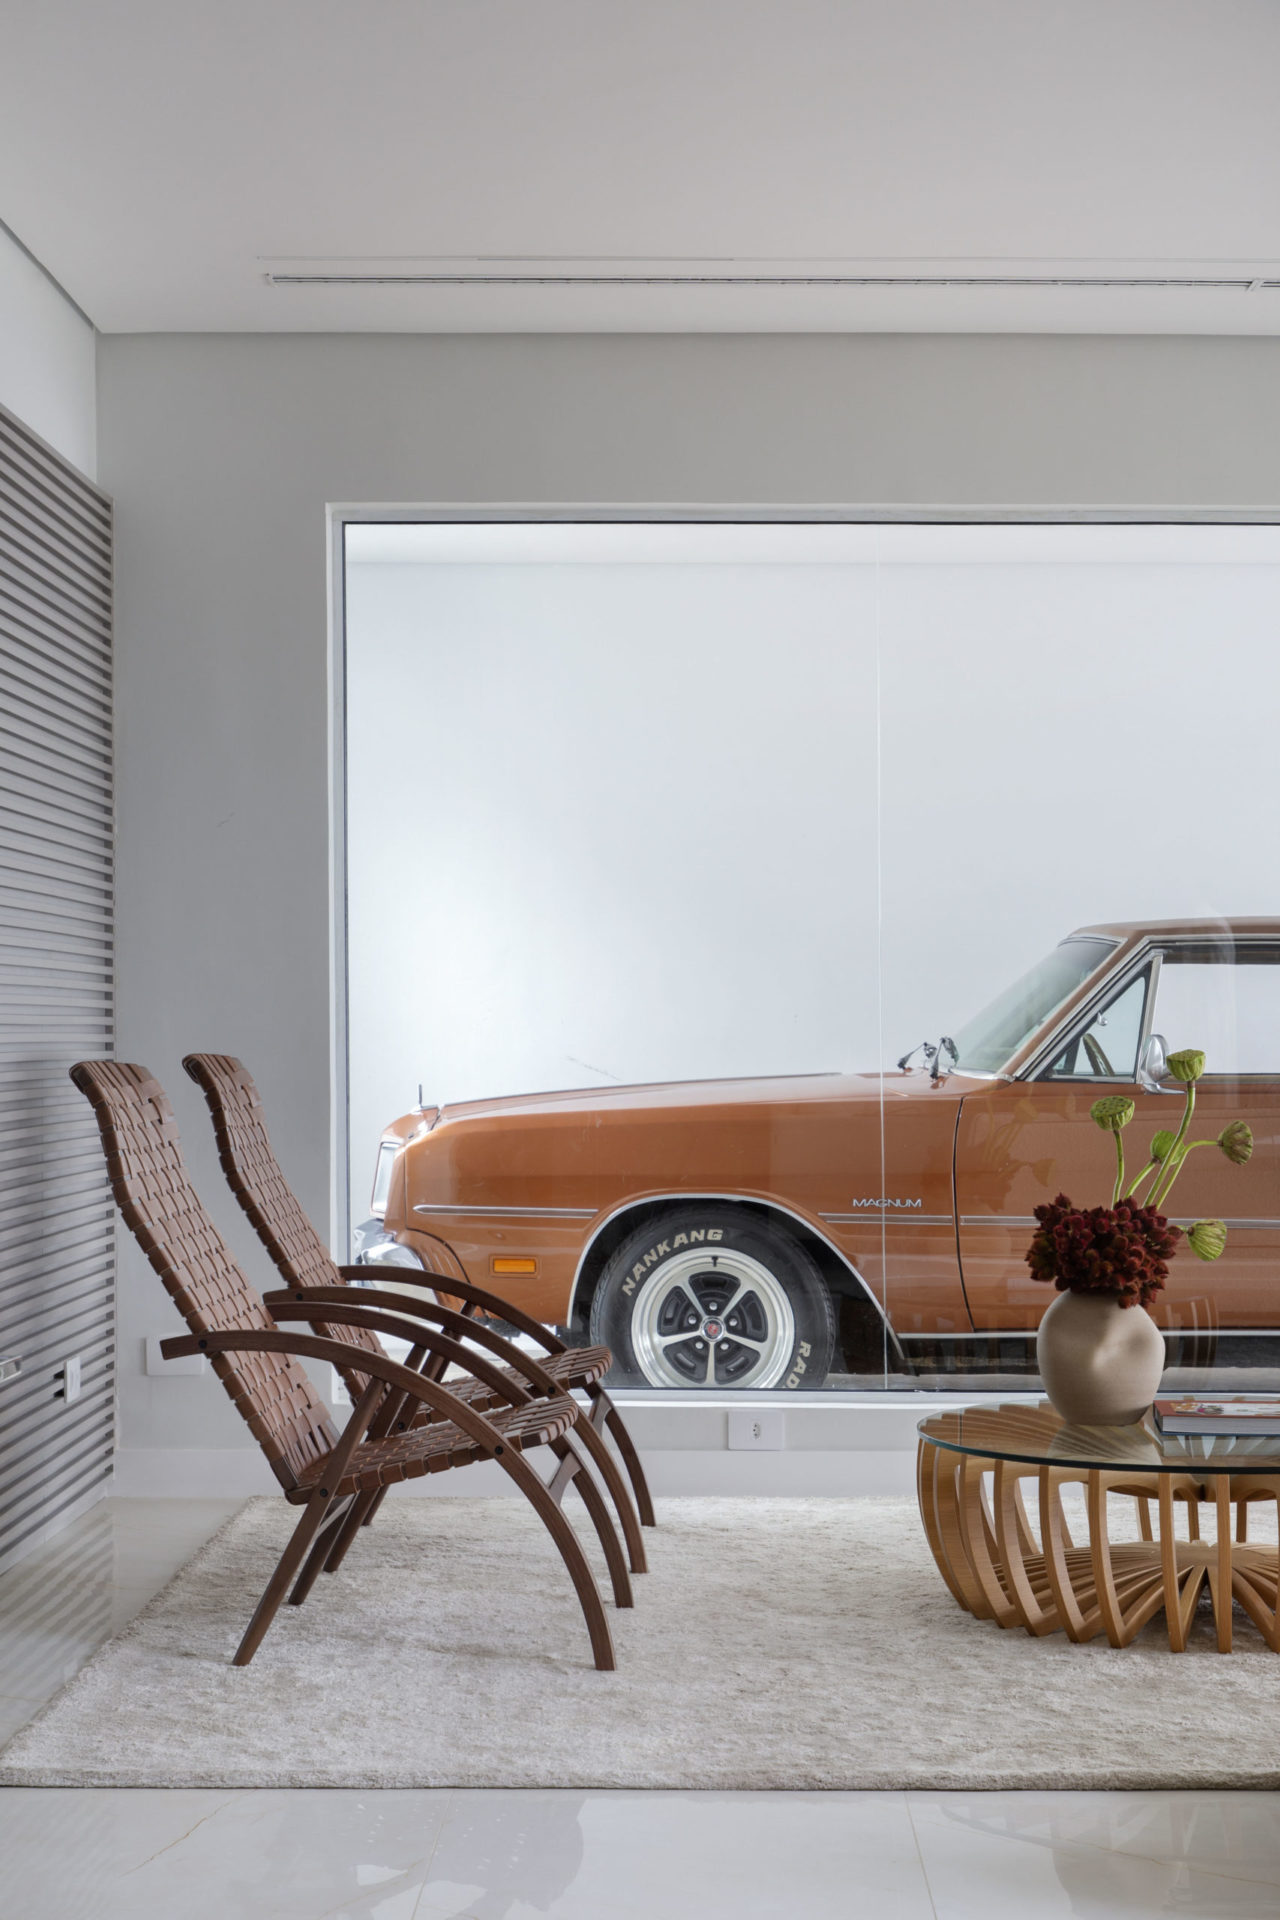 Peças de mobiliario com design assinado, em uma sala com um grande painel em vidro, de onde se vê a garagem, com um carro antigo estacionado